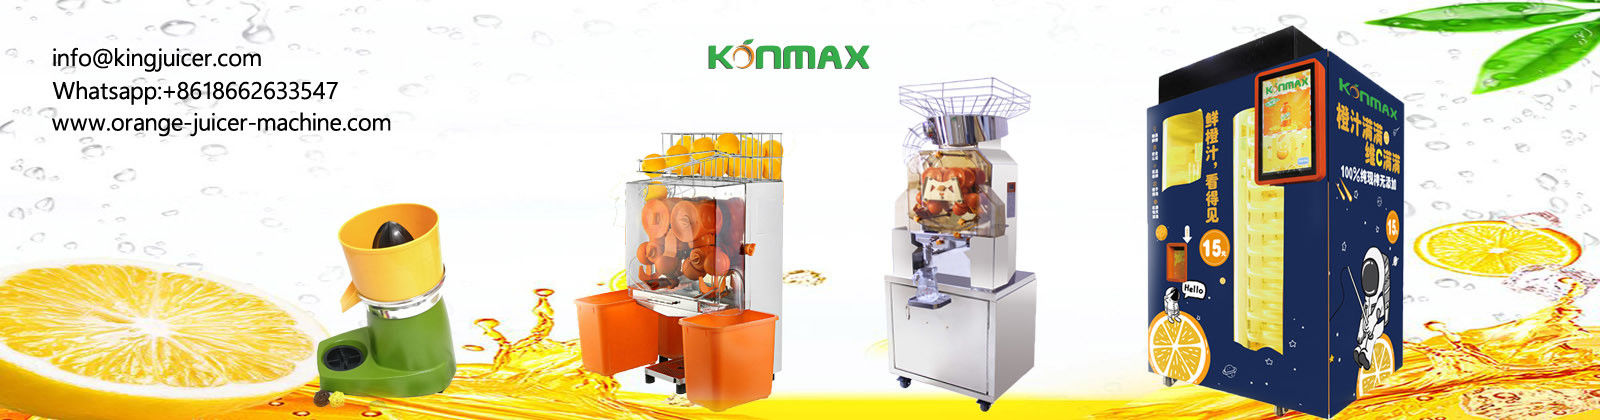 Automatische Oranje Juicer-Machine